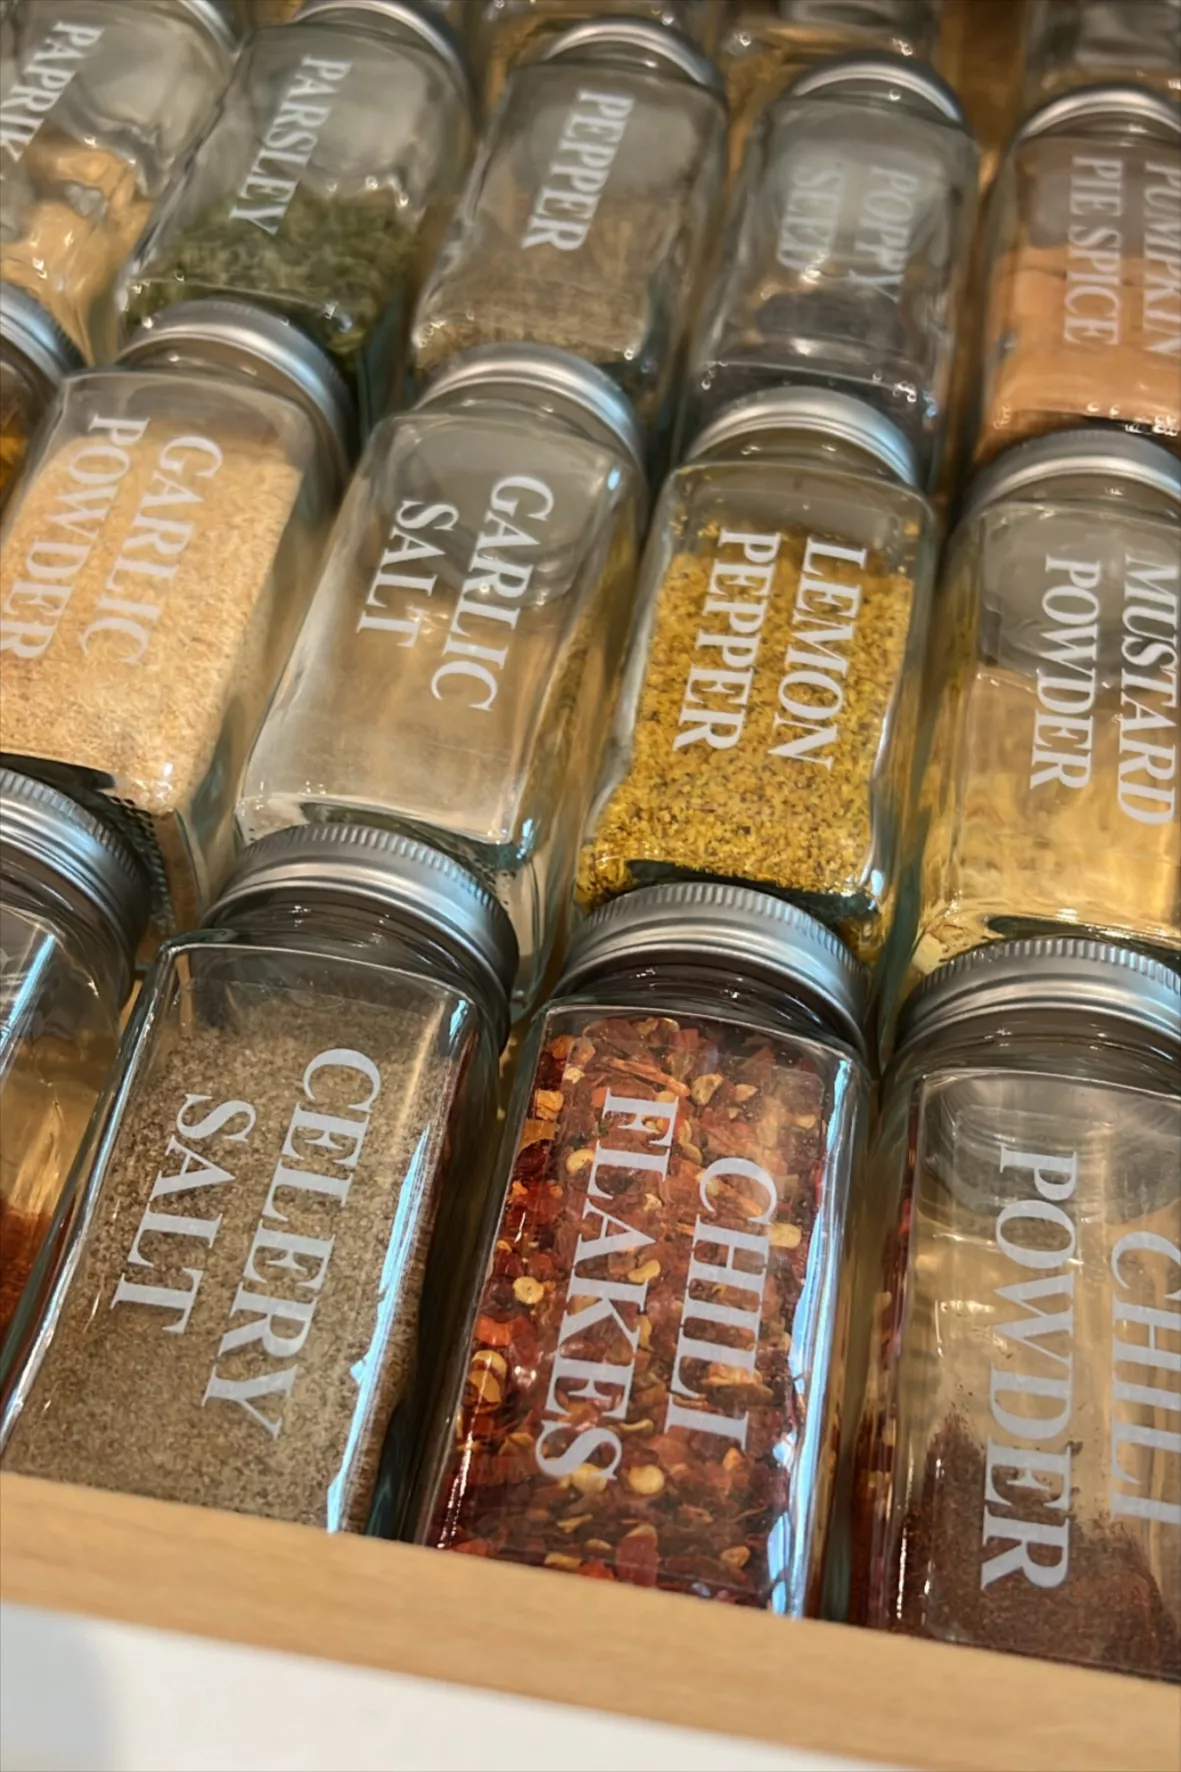  AOZITA 36 Pcs Glass Spice Jars with Spice Labels - 4oz